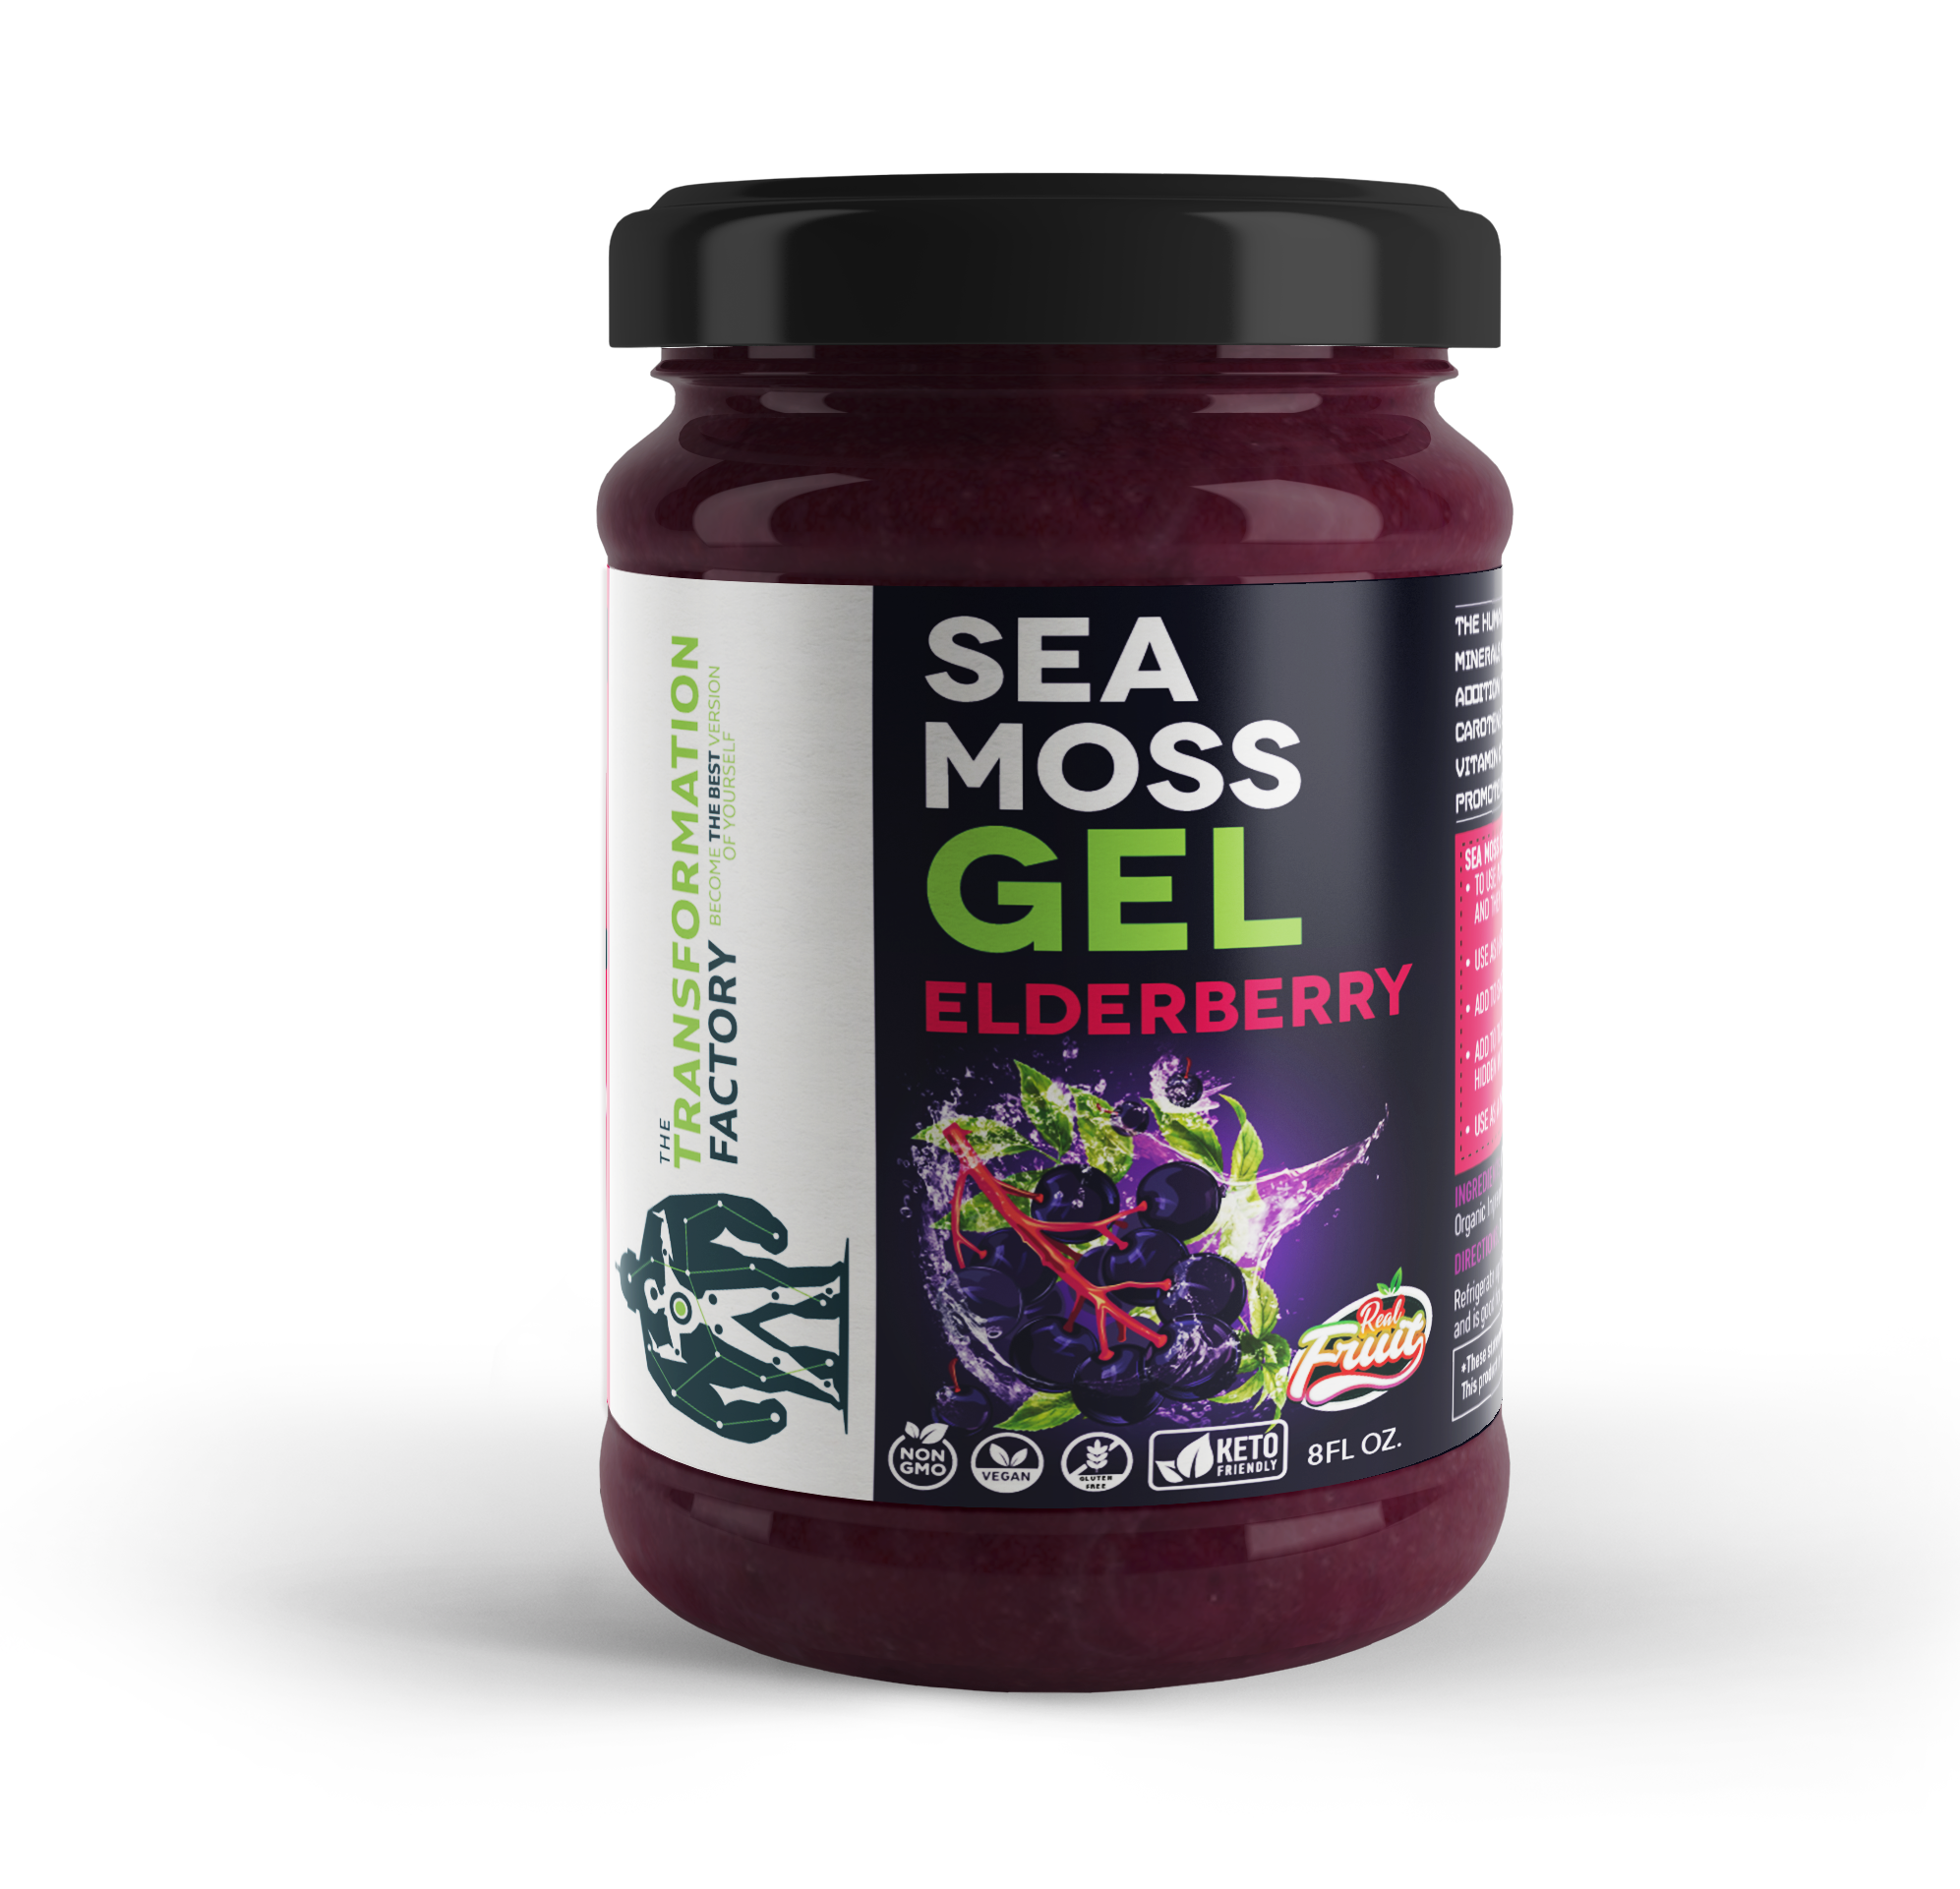 A jar of elderberry sea moss gel